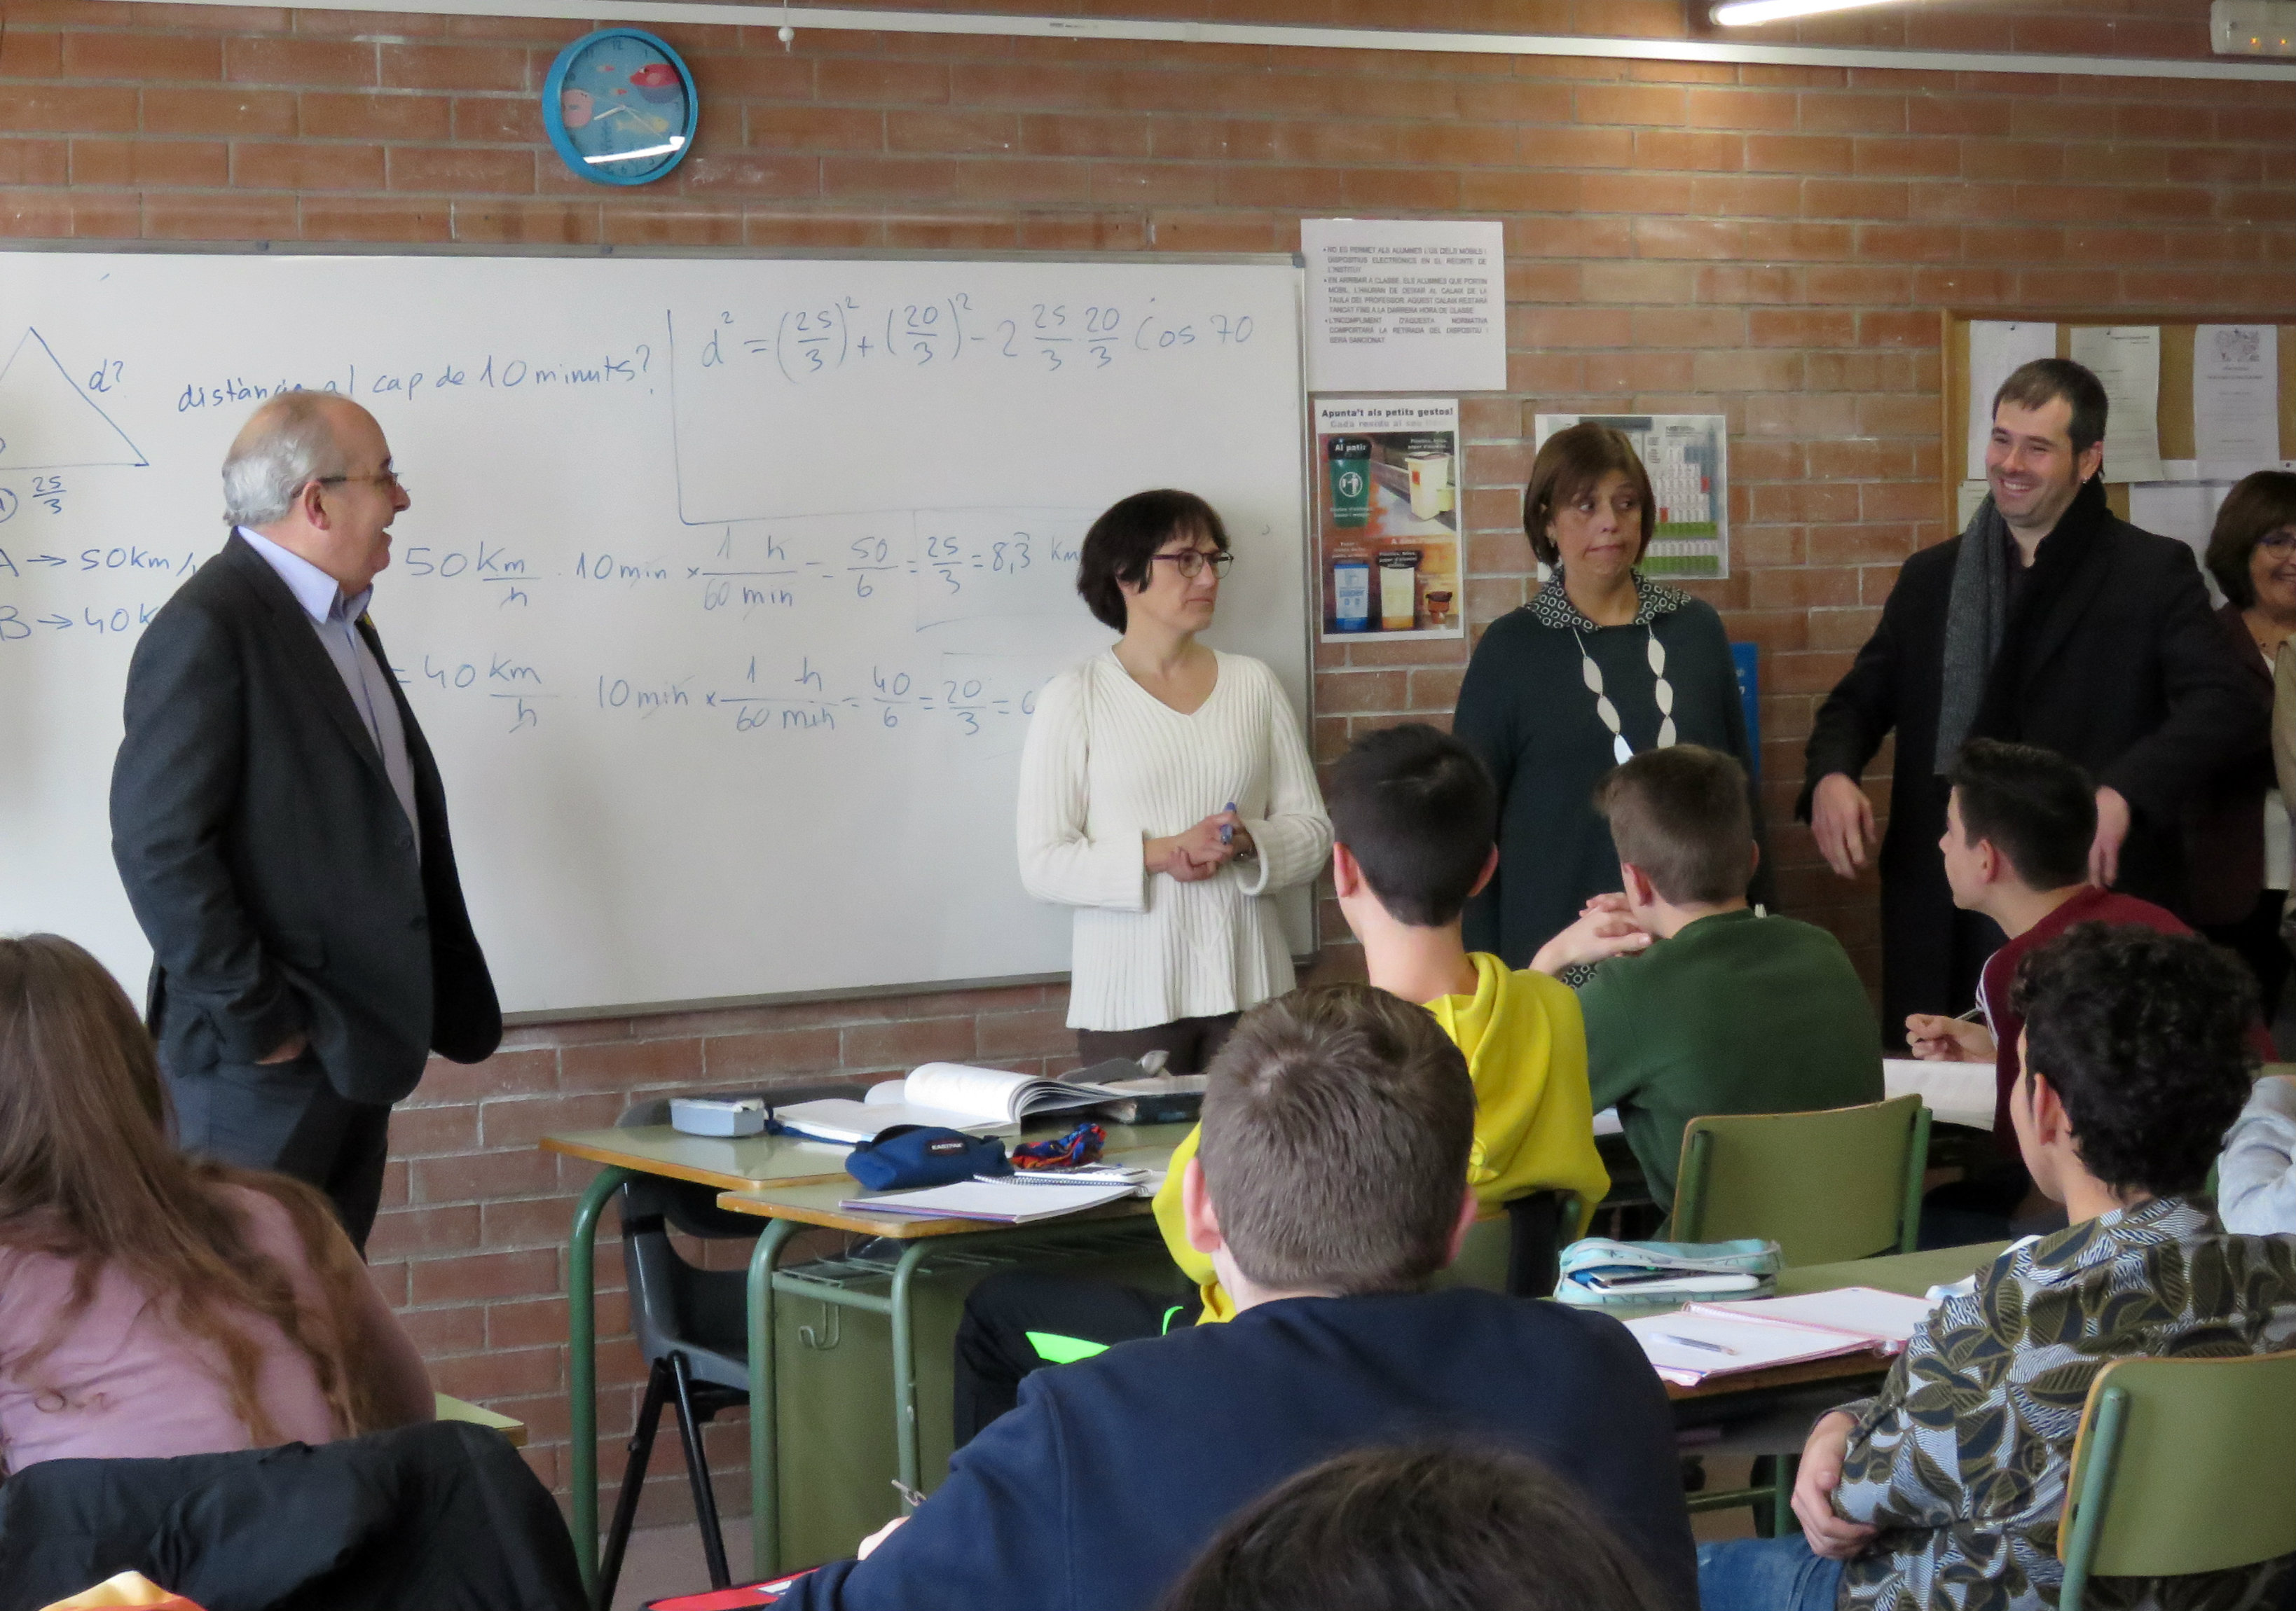 Josep Bargalló, esquerra, ha visitat diferents aules de l'institut Pere Calders